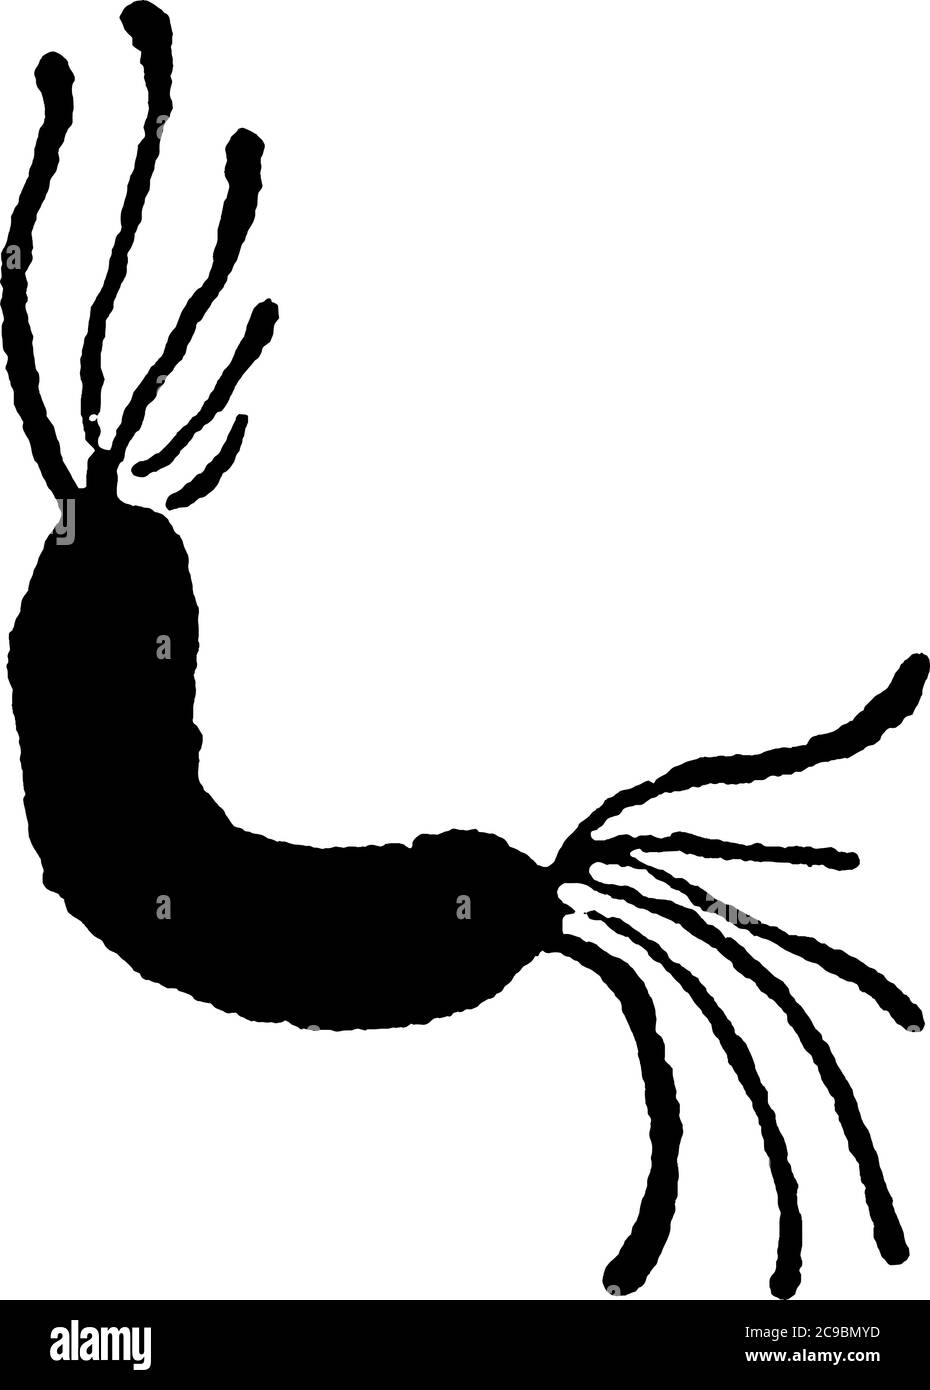 Eine typische Darstellung der motilen und spiralförmigen Bakterien, Spirillum Undula, Ehrunb, eine Form von Bakterien, die Zilien und ihre Anordnung zeigen, Stock Vektor